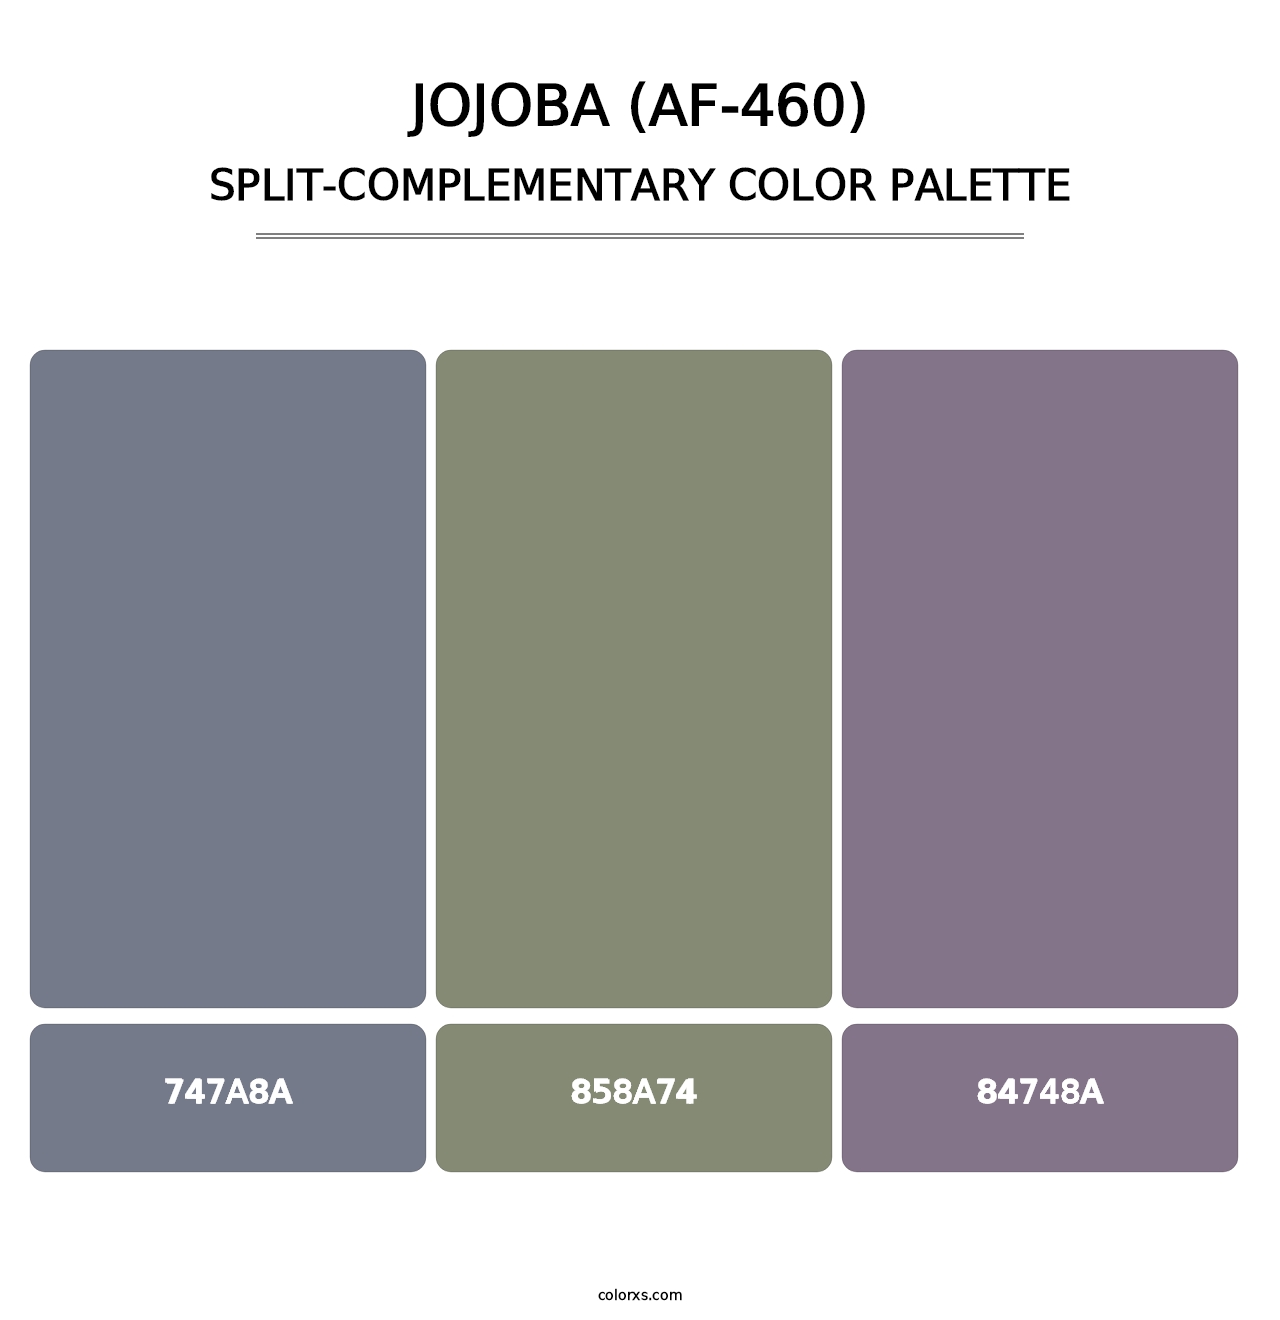 Jojoba (AF-460) - Split-Complementary Color Palette